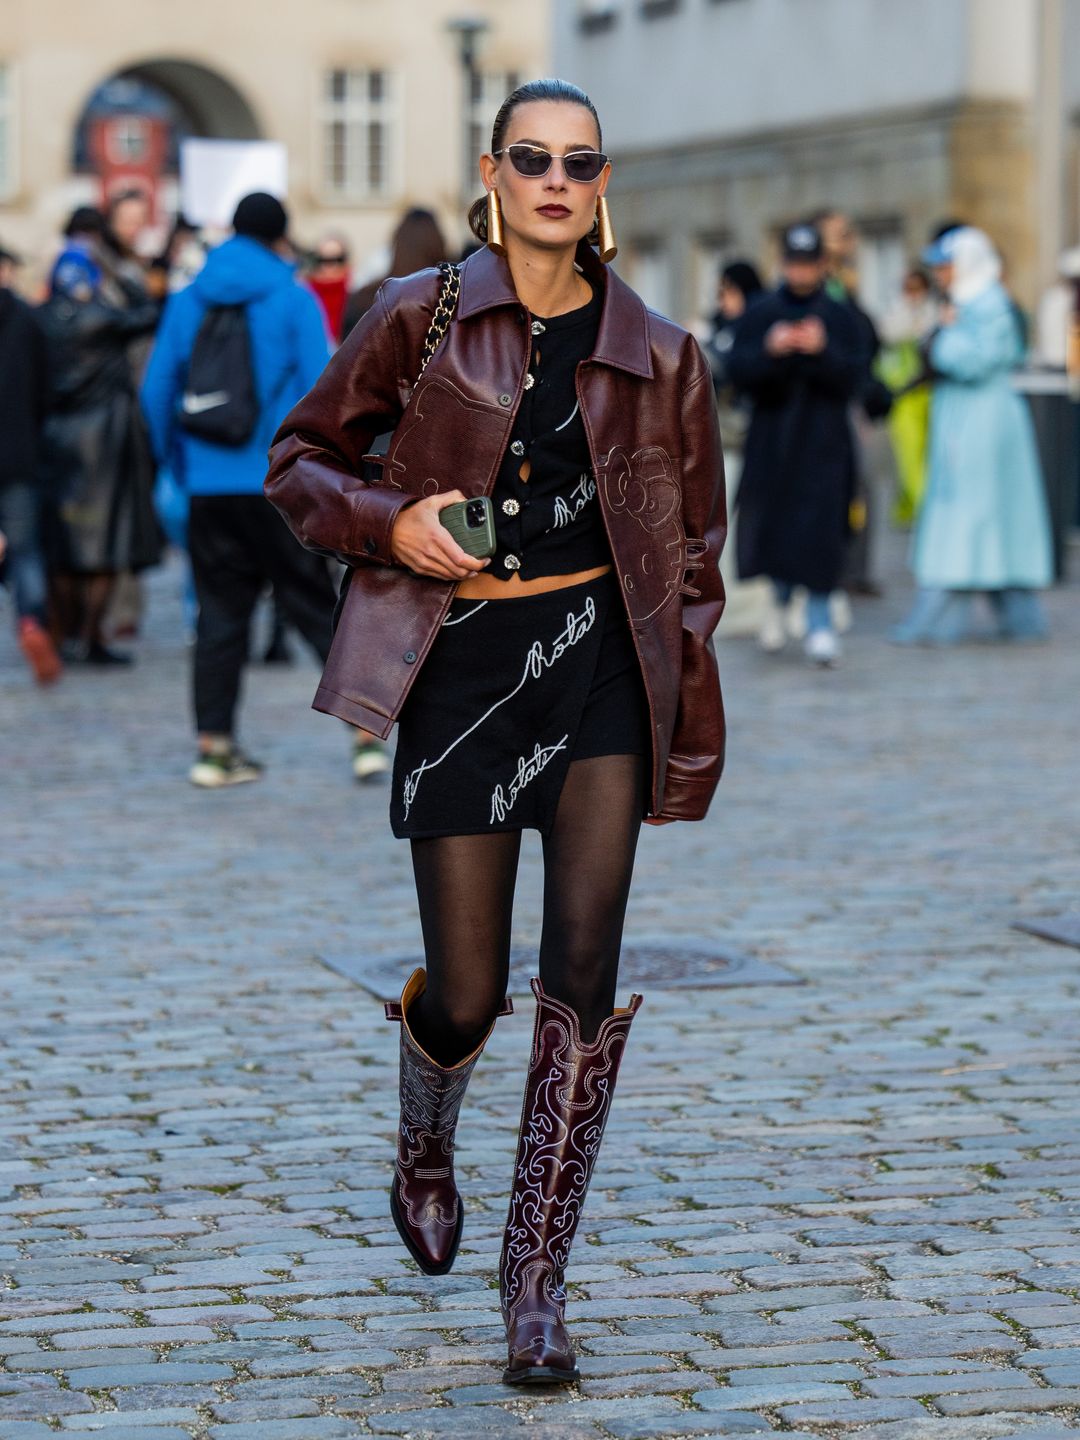 Vera van Erp rocks cowboy boots with a burgundy boxy jacket 